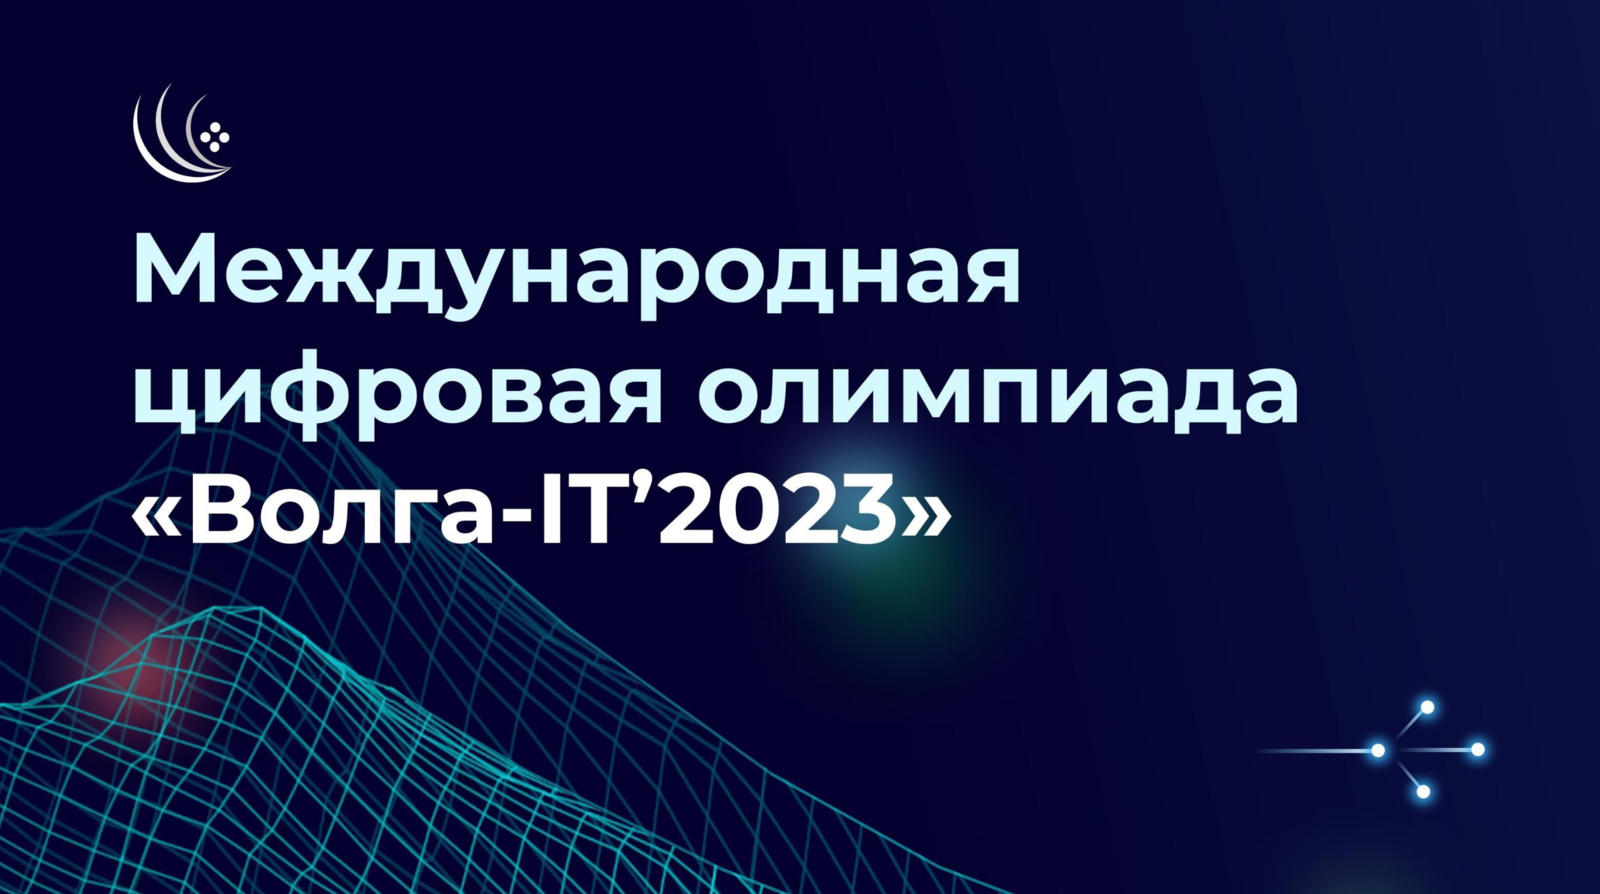 2023 ҫулта "Волга-IT’2023" пӗтӗм тӗнчери цифра олимпиади пулать